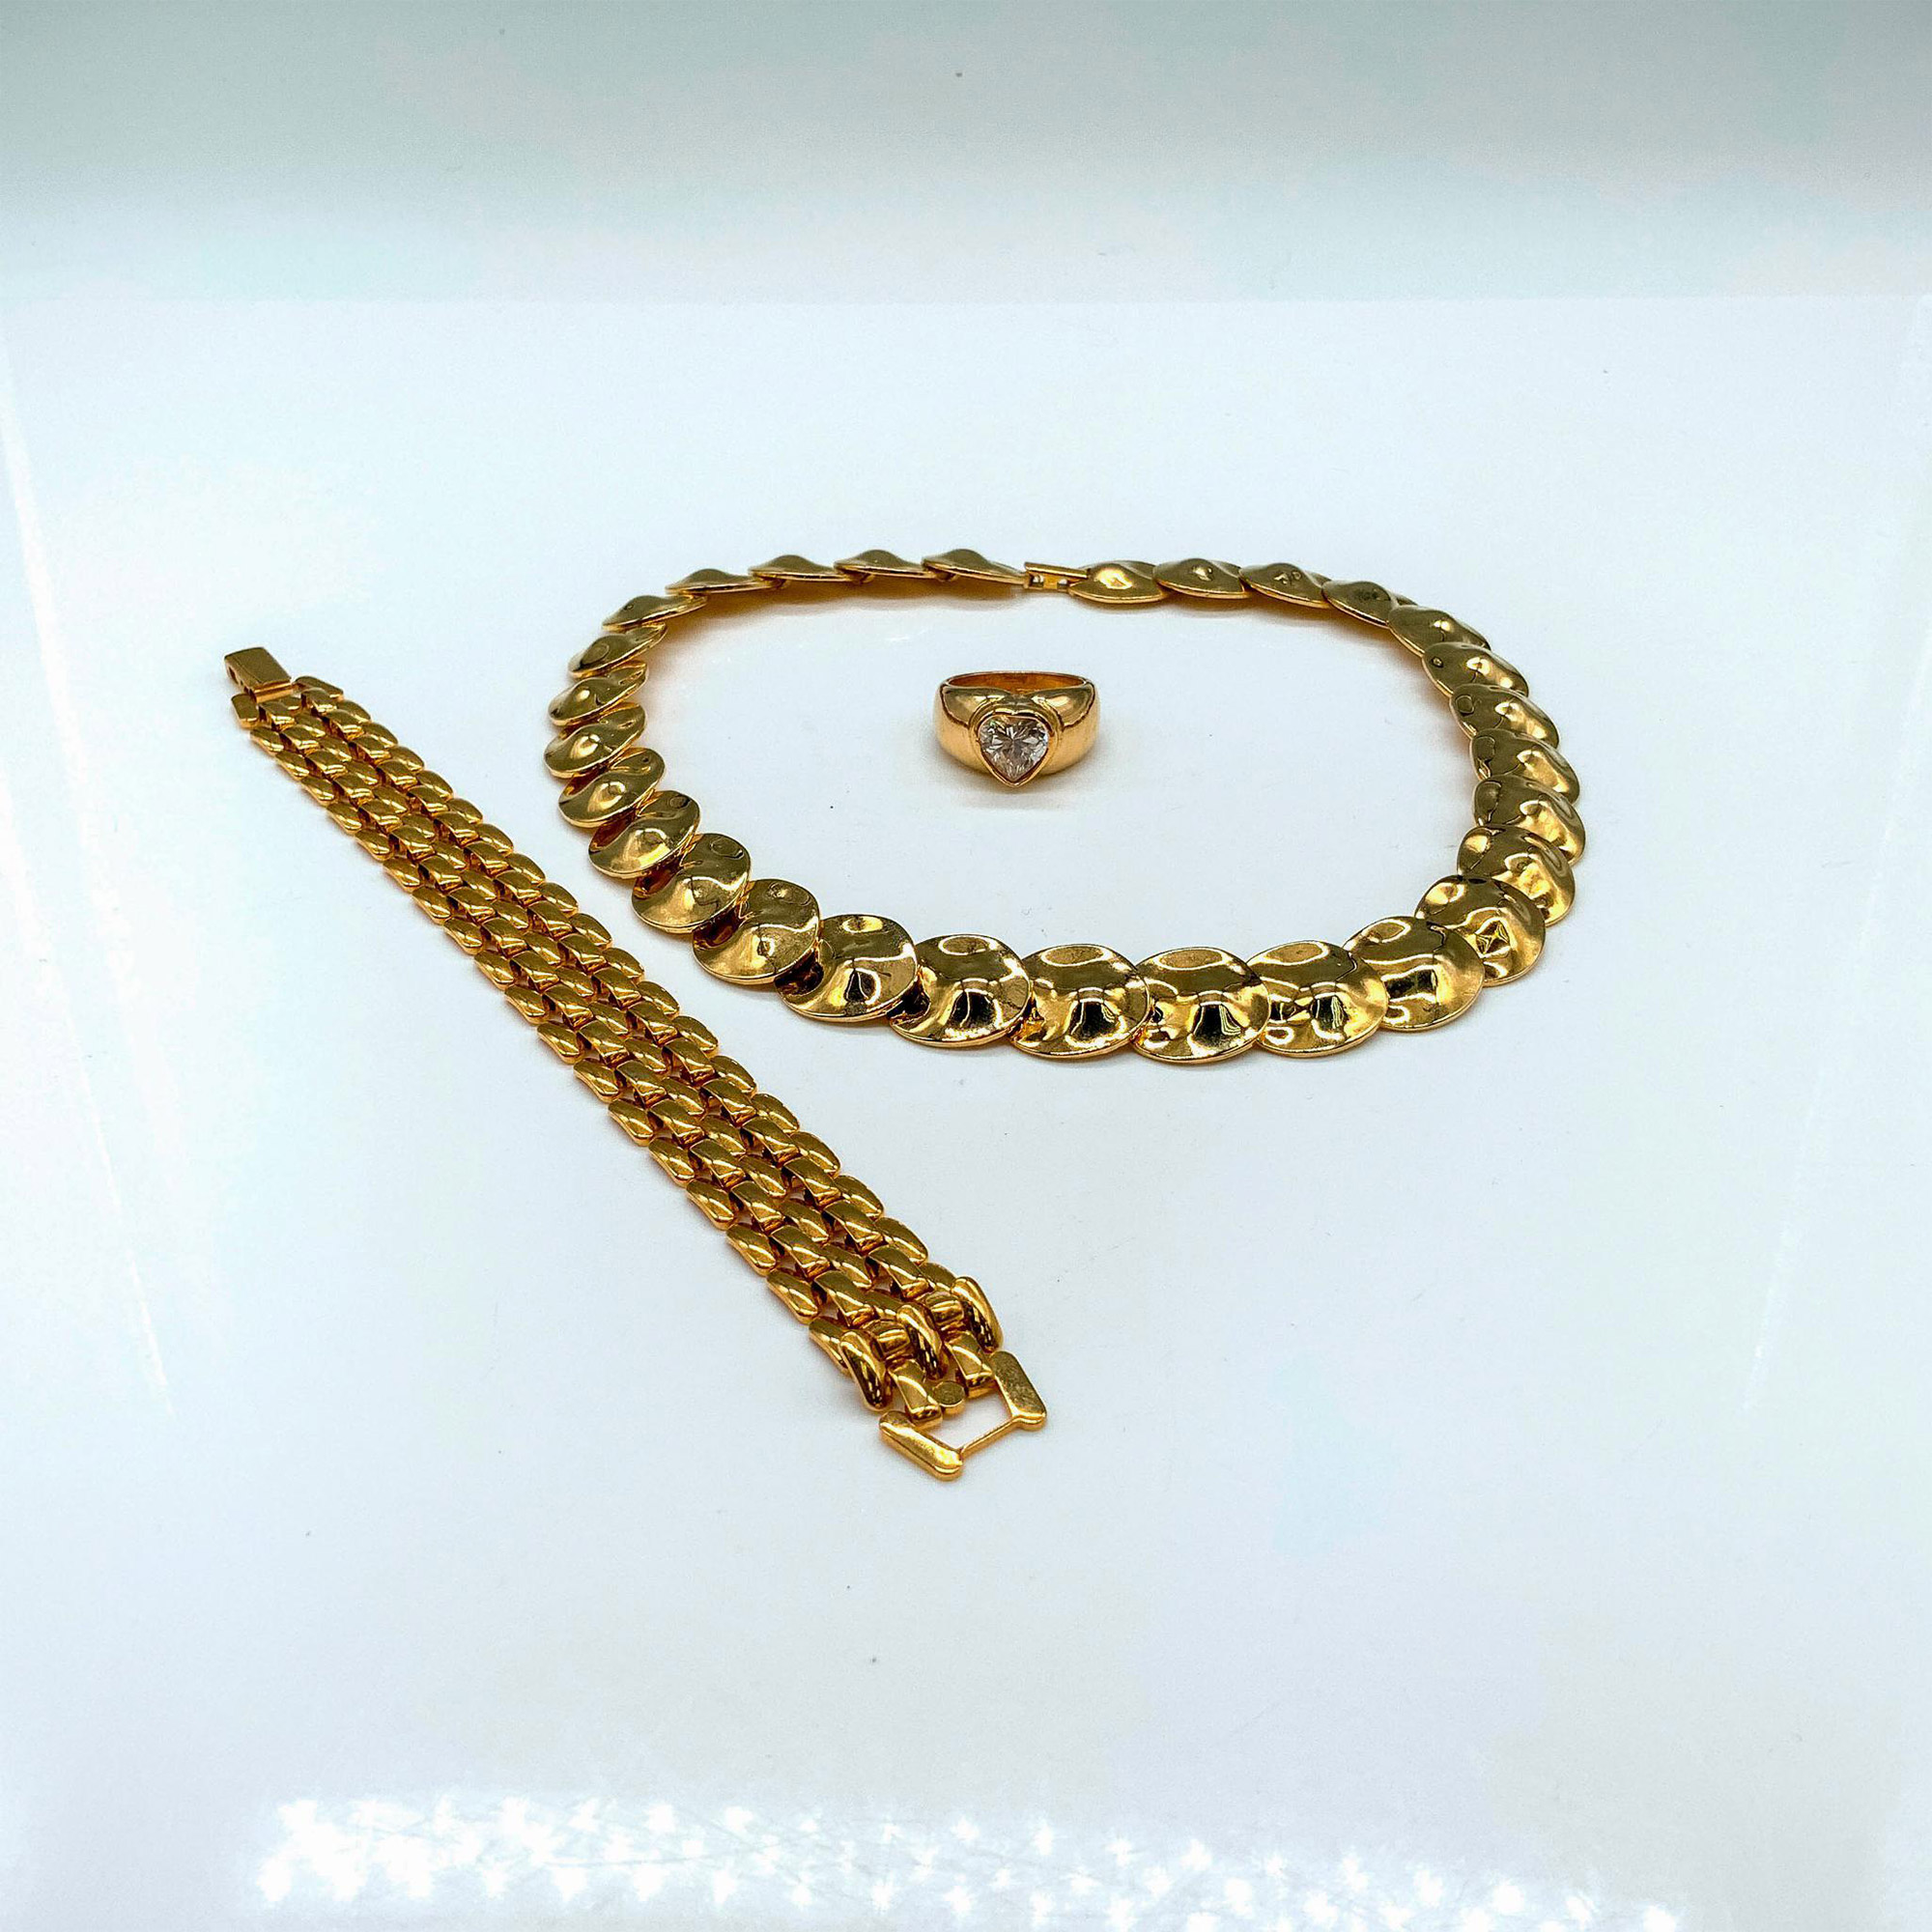 3pc Elegant Gold Filled Necklace, Bracelet, and Ring Set - Image 2 of 3